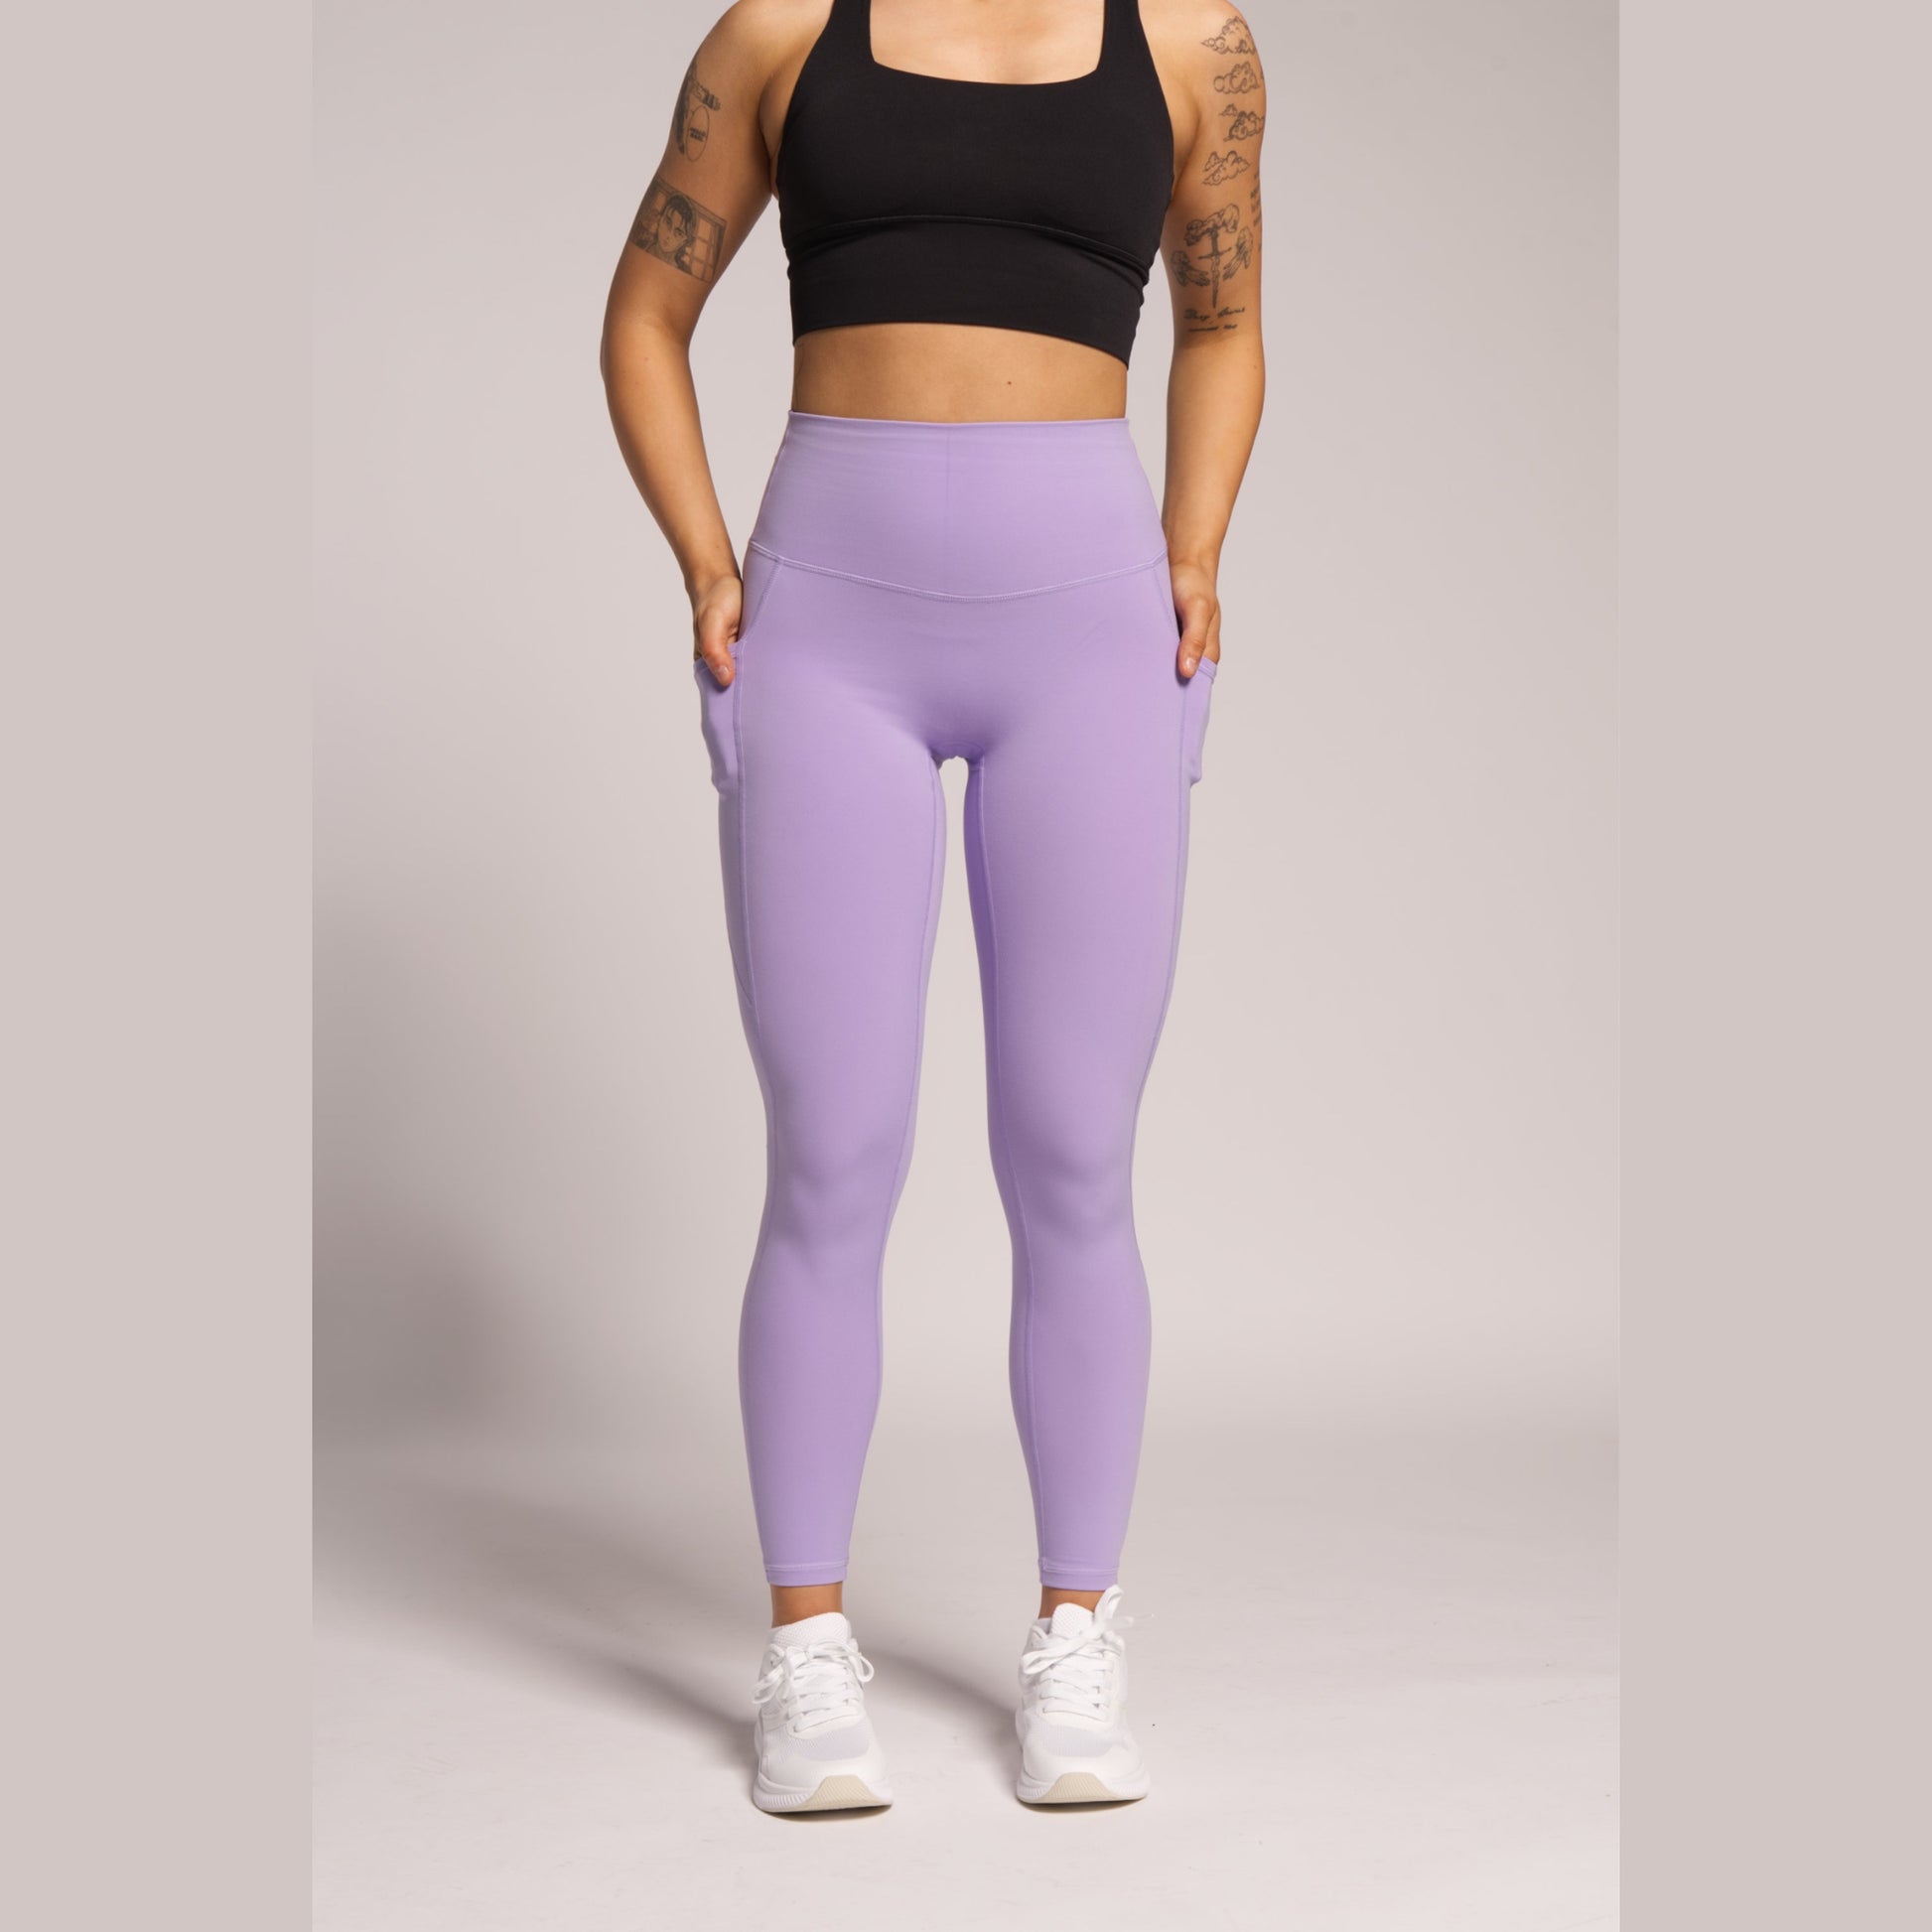 Pocket leggings for women’s -Lilac